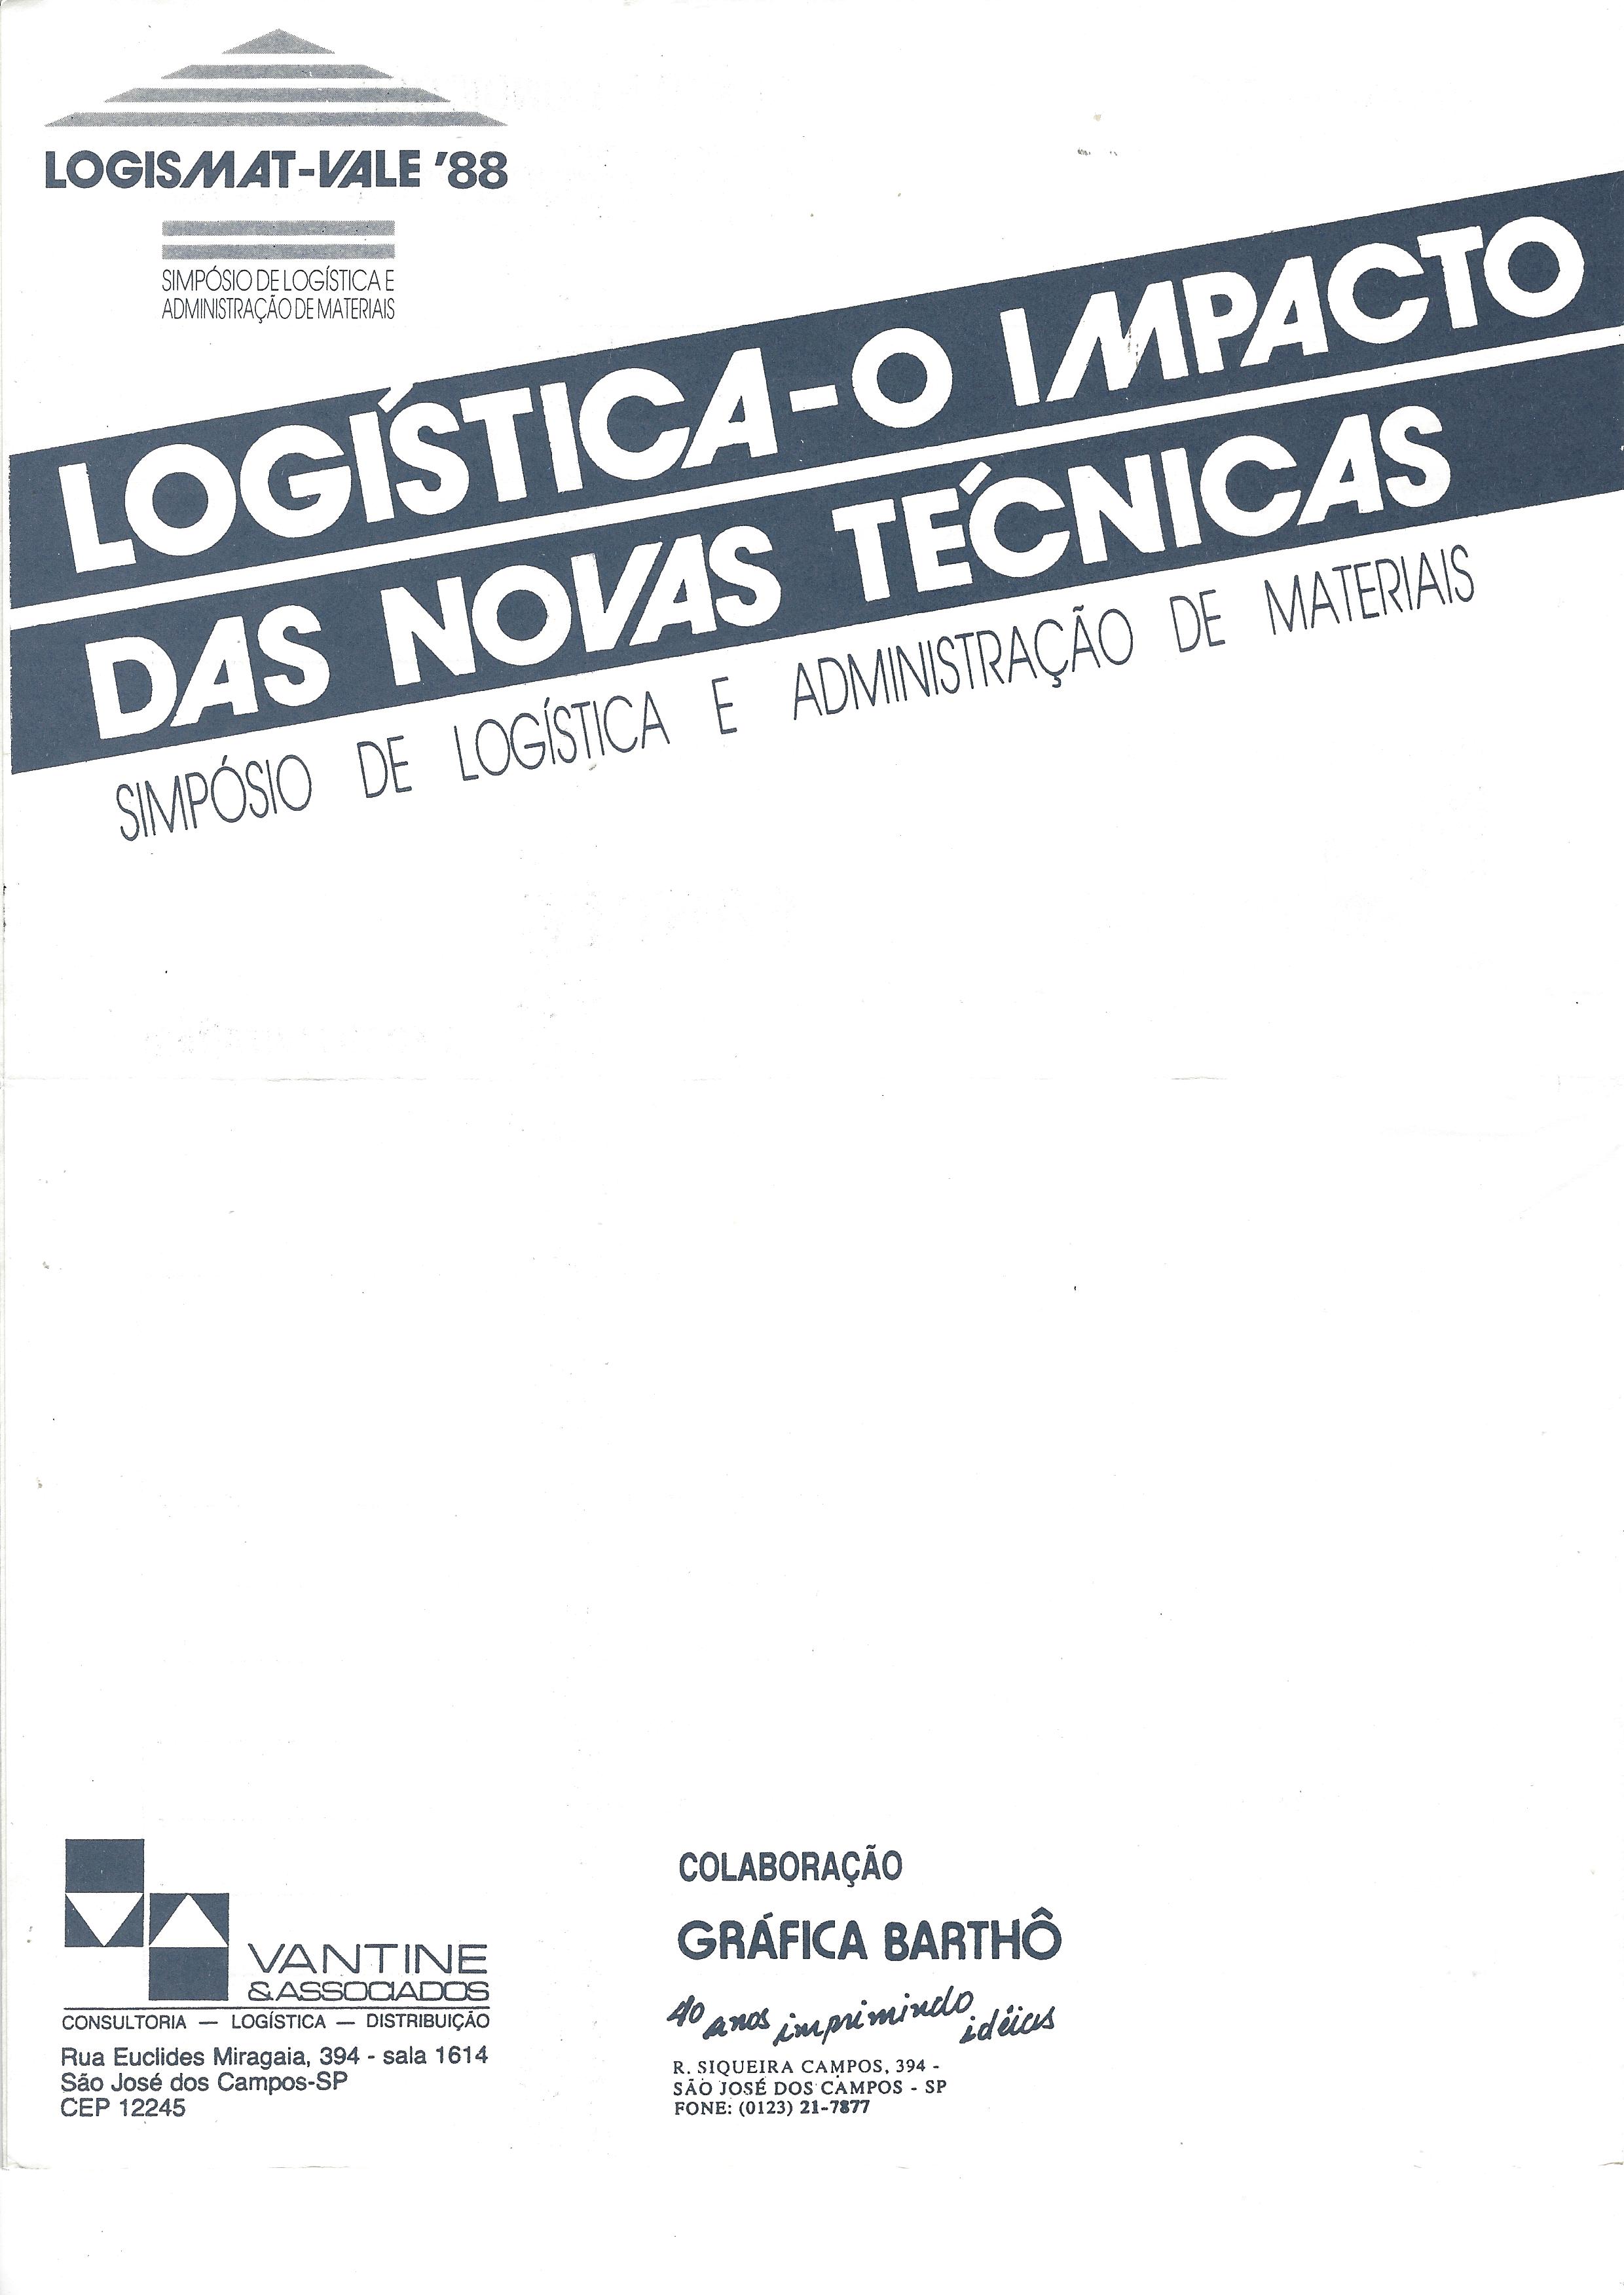 LOGISMAT-VALE’88 – logística – o impacto das novas técnicas – simpósio de logística e administração de materiais